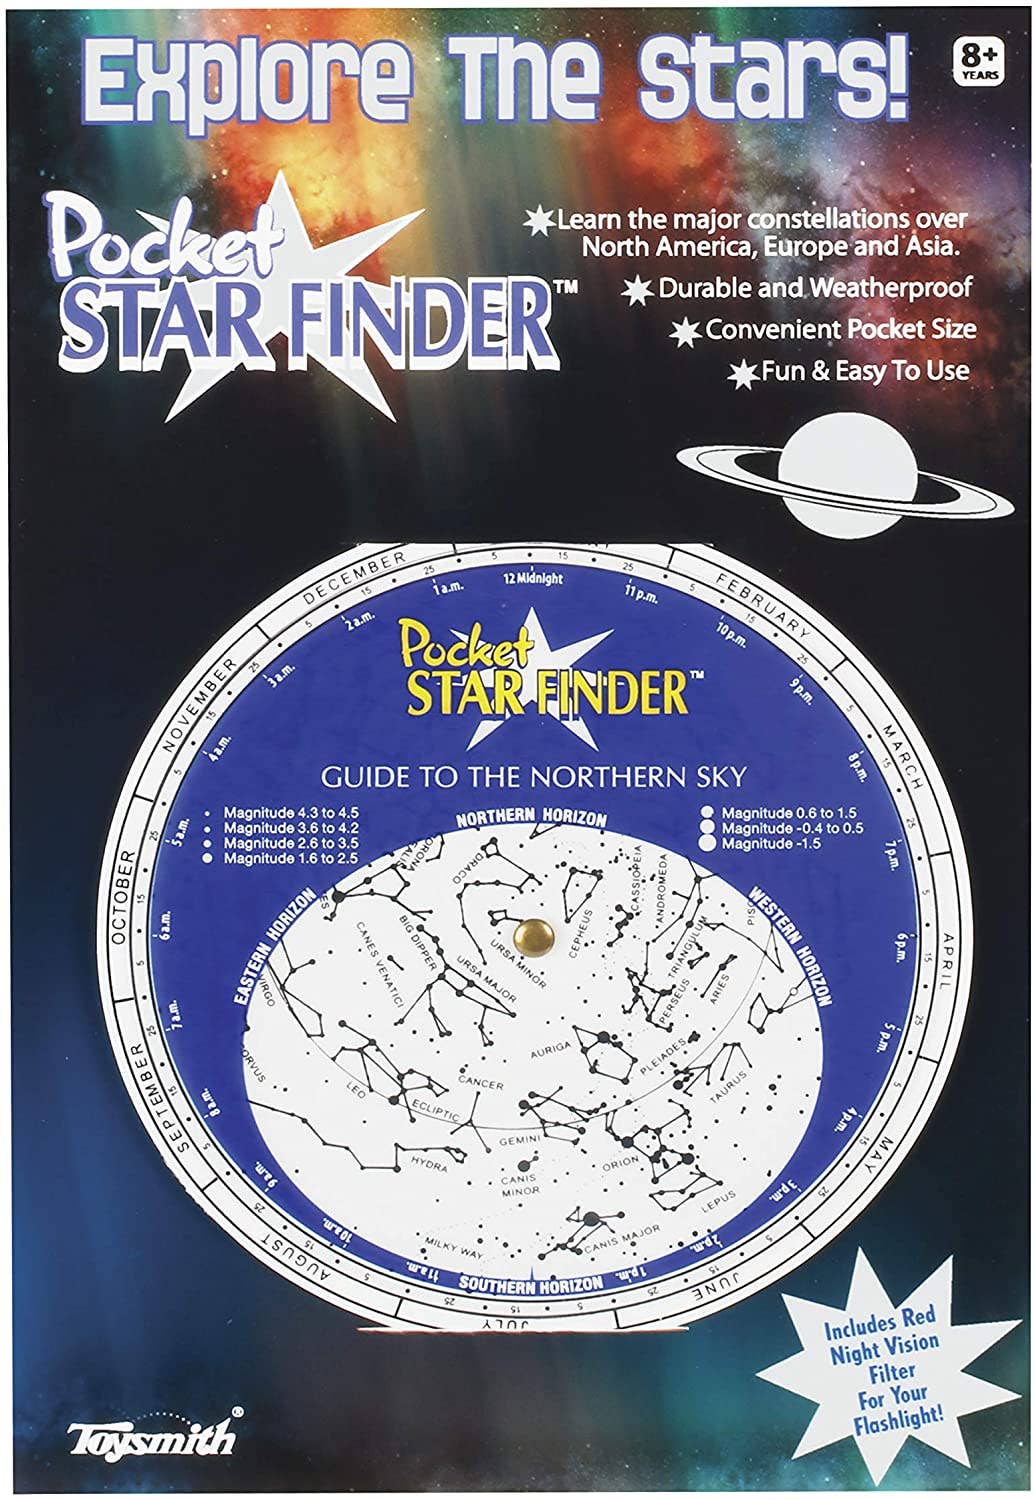 Pocket Star Finder